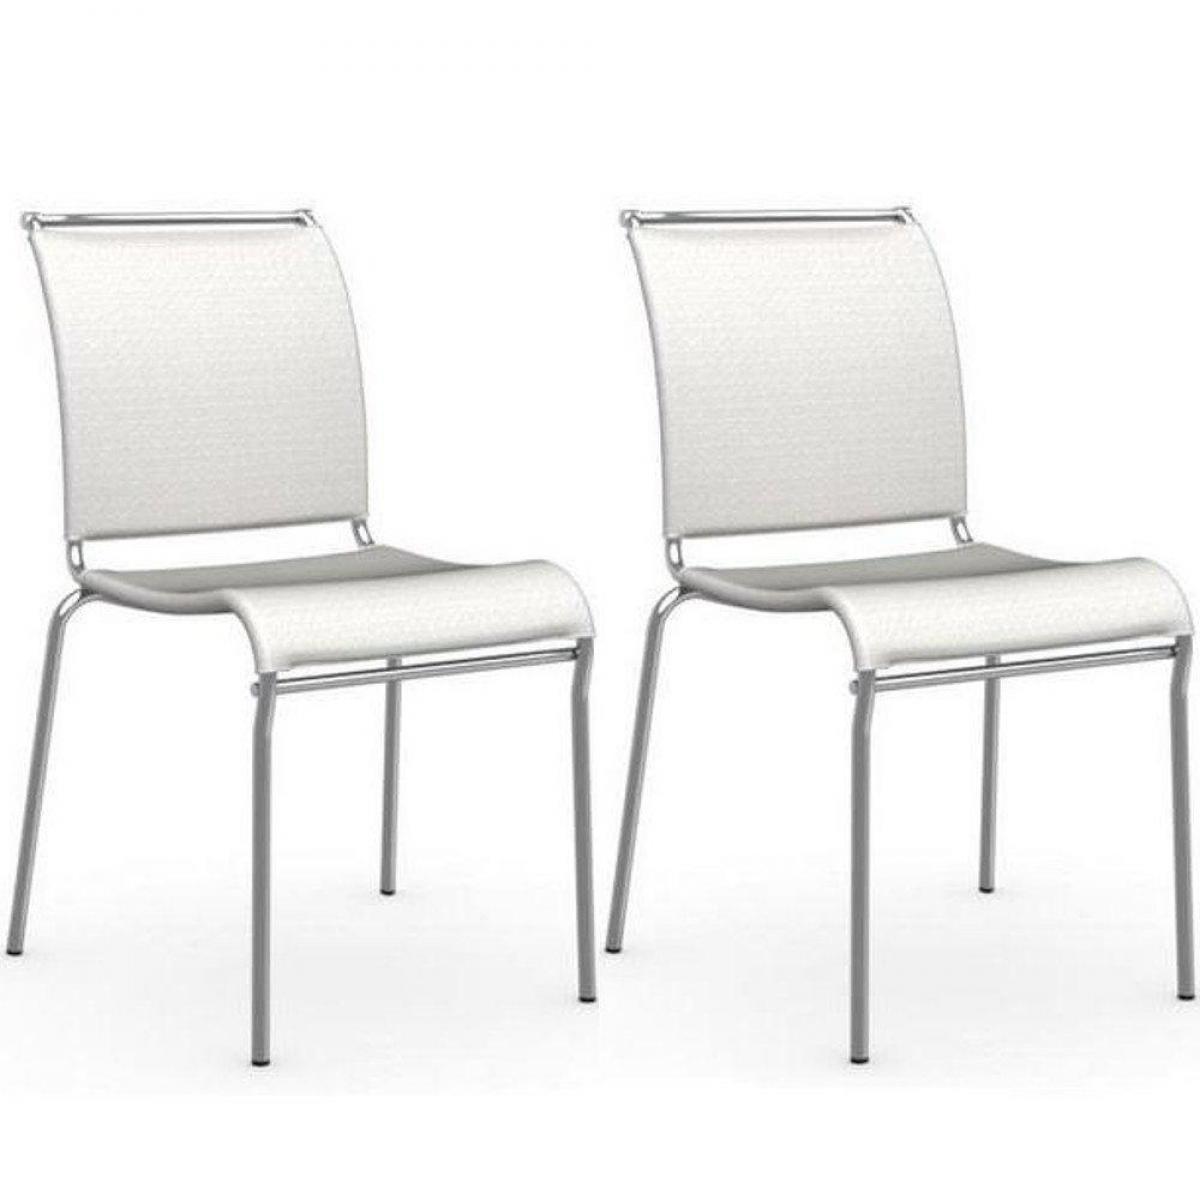 Inside 75 - Lot de 2 chaises italienne AIR structure acier chromé assise tissu blanc nancy - Chaises